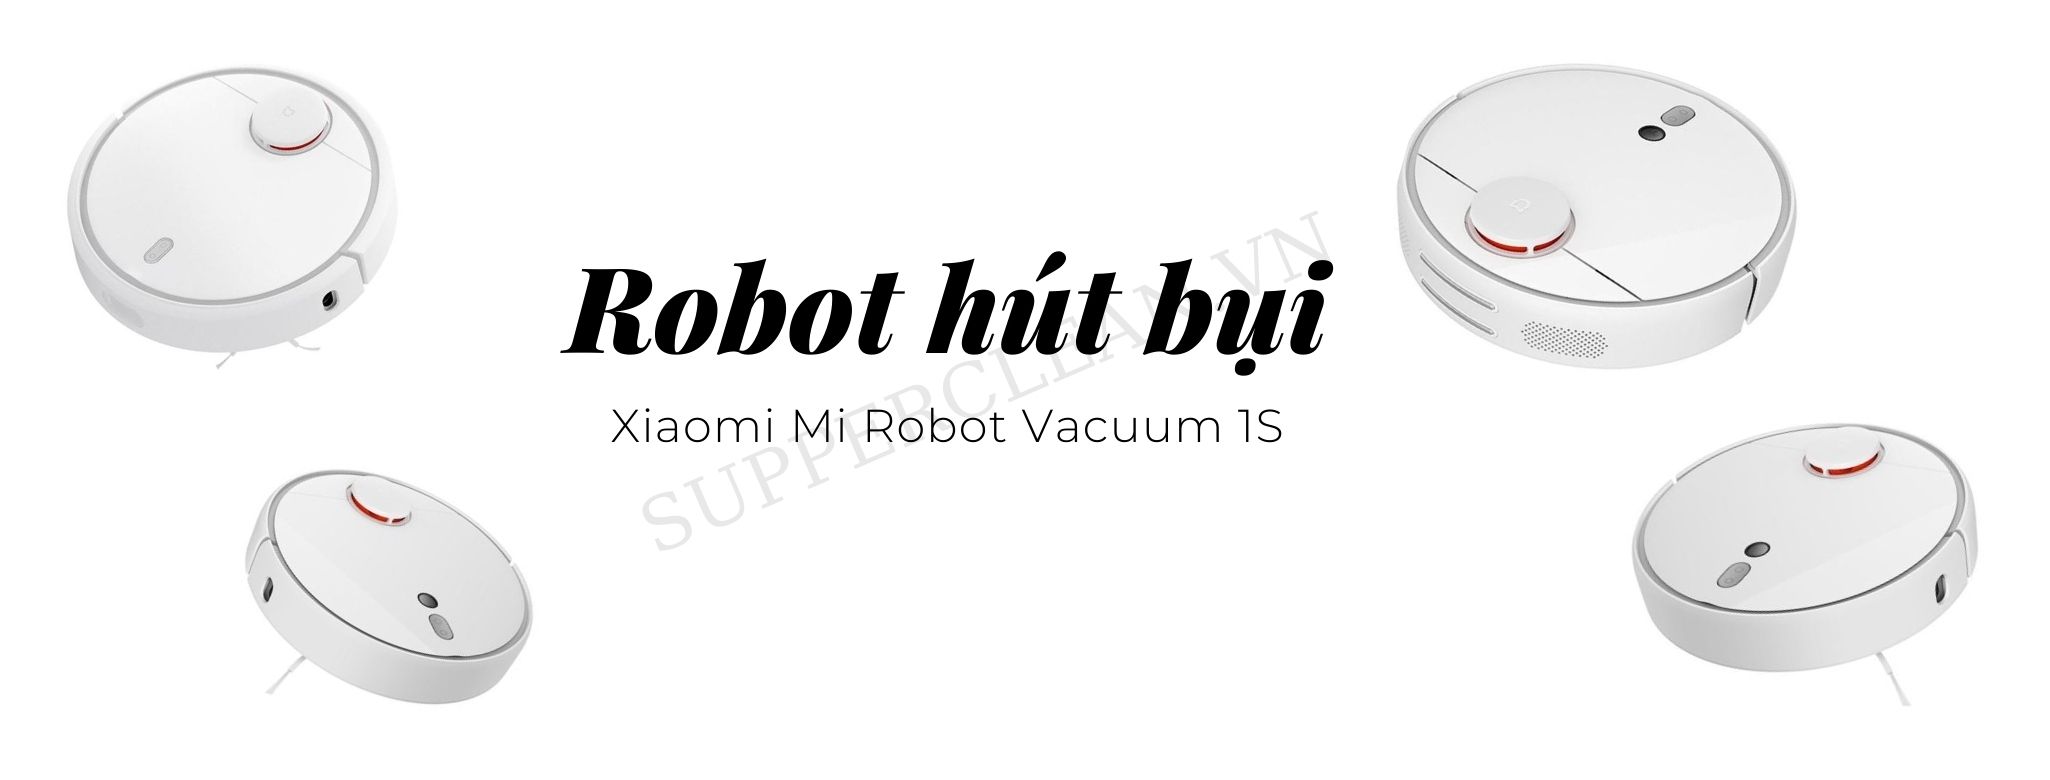 Xiaomi Mi Robot Vacuum 1S